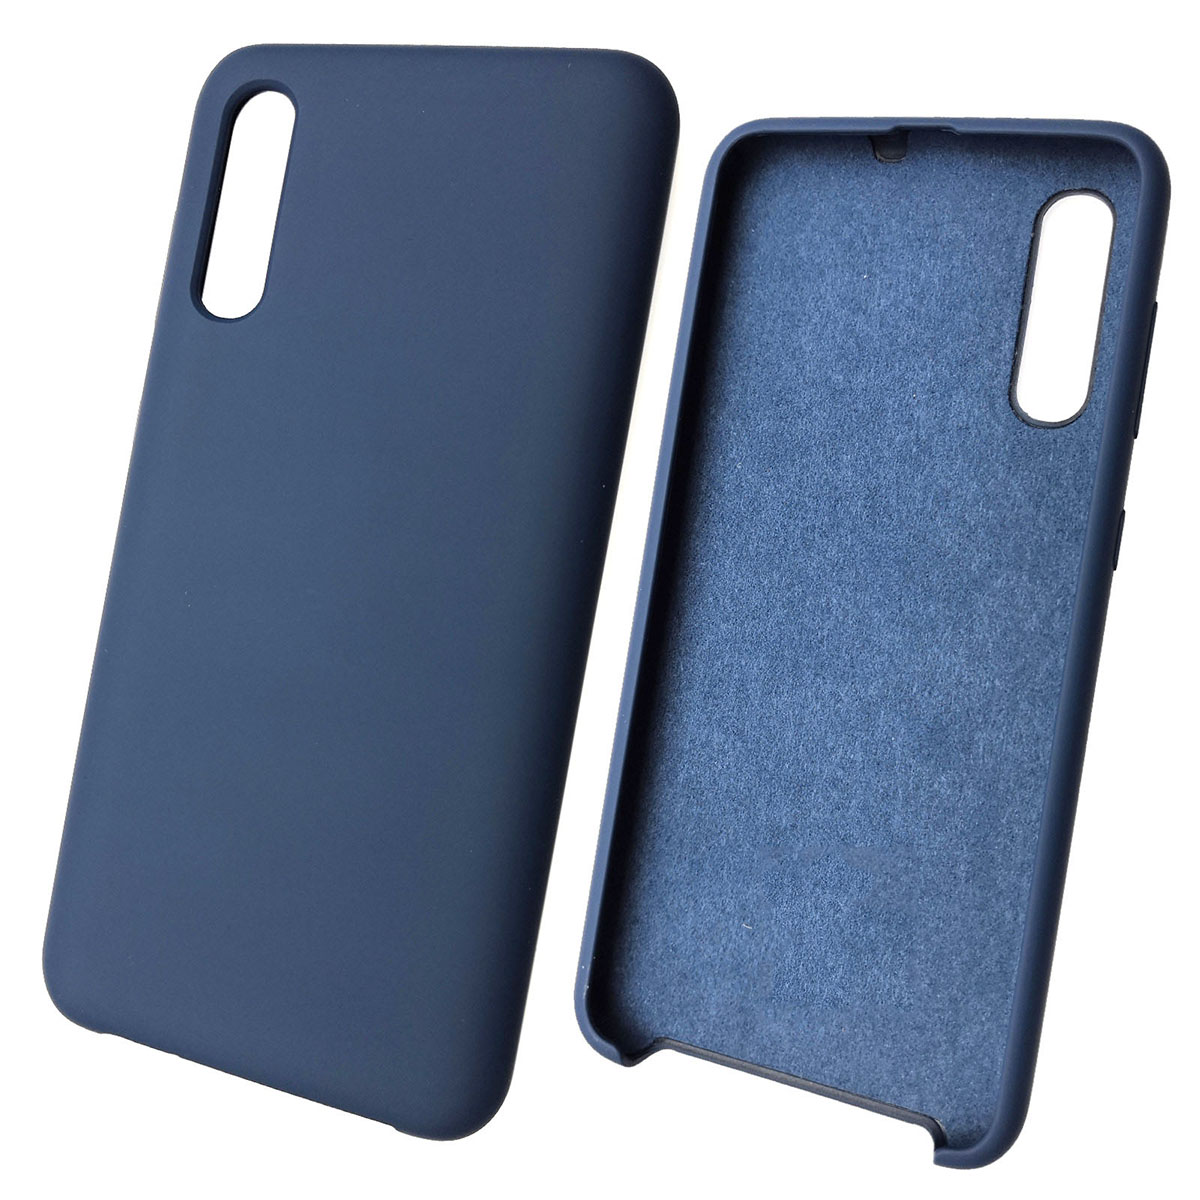 Чехол накладка Silicon Cover для SAMSUNG Galaxy A50 (SM-A505), A30s (SM-A307), A50s (SM-A507), силикон, бархат, цвет синий кобальт.